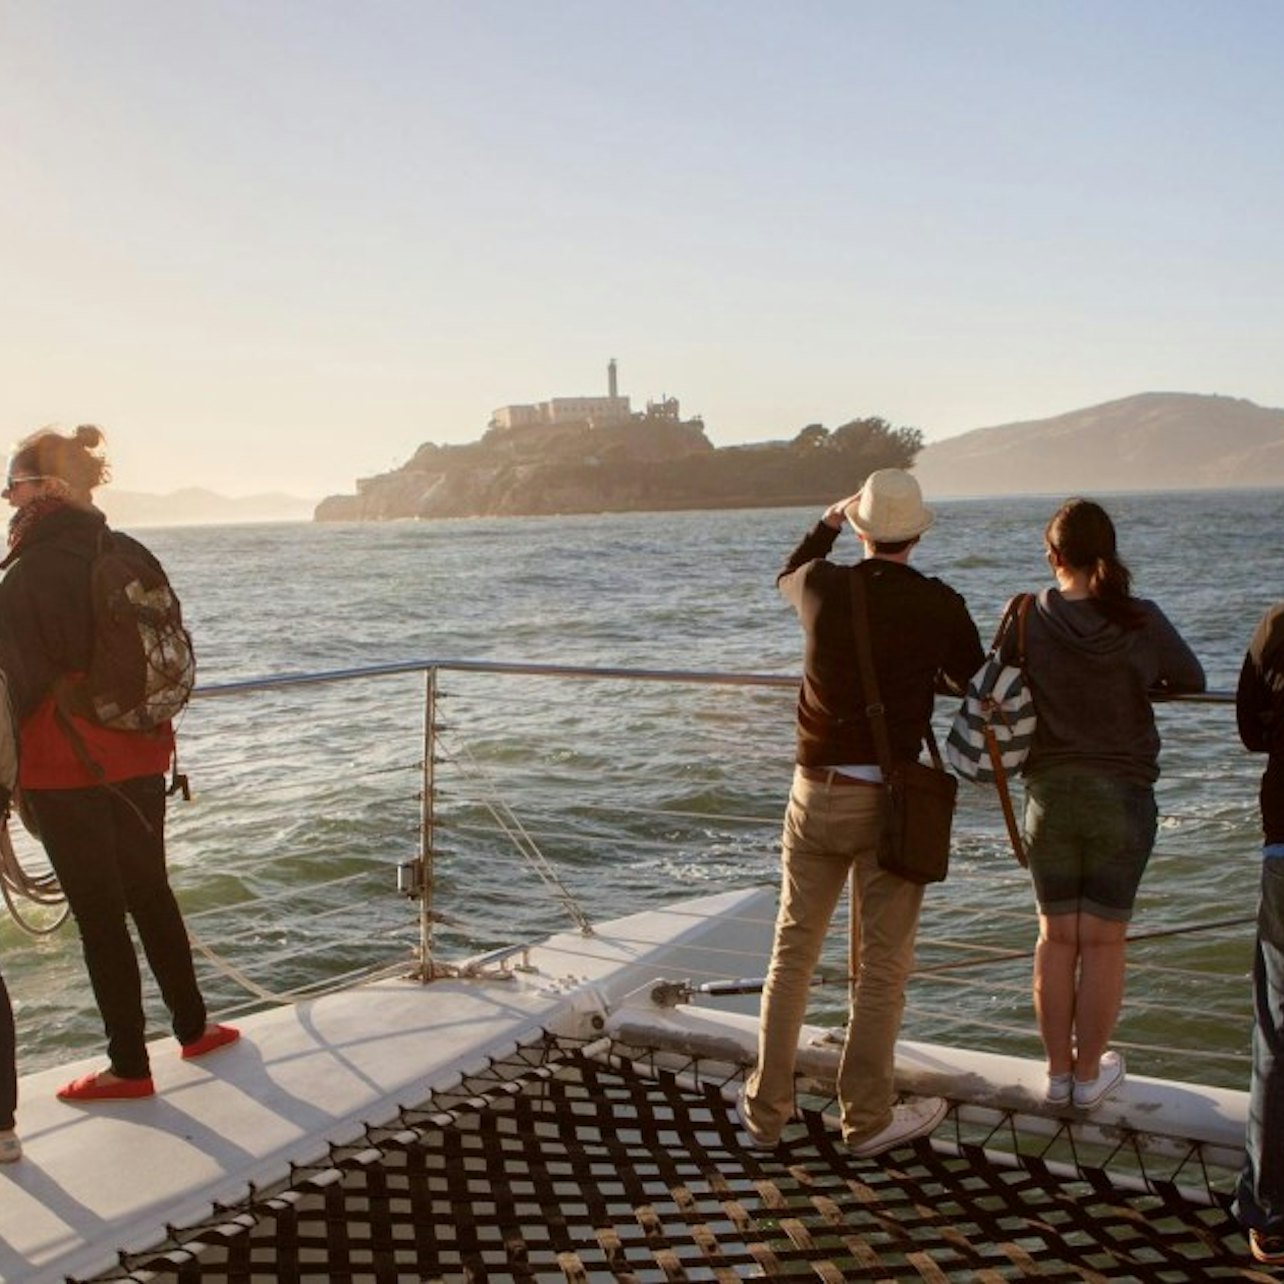 Bahía de San Francisco: Crucero en catamarán al atardecer - Alojamientos en San Francisco